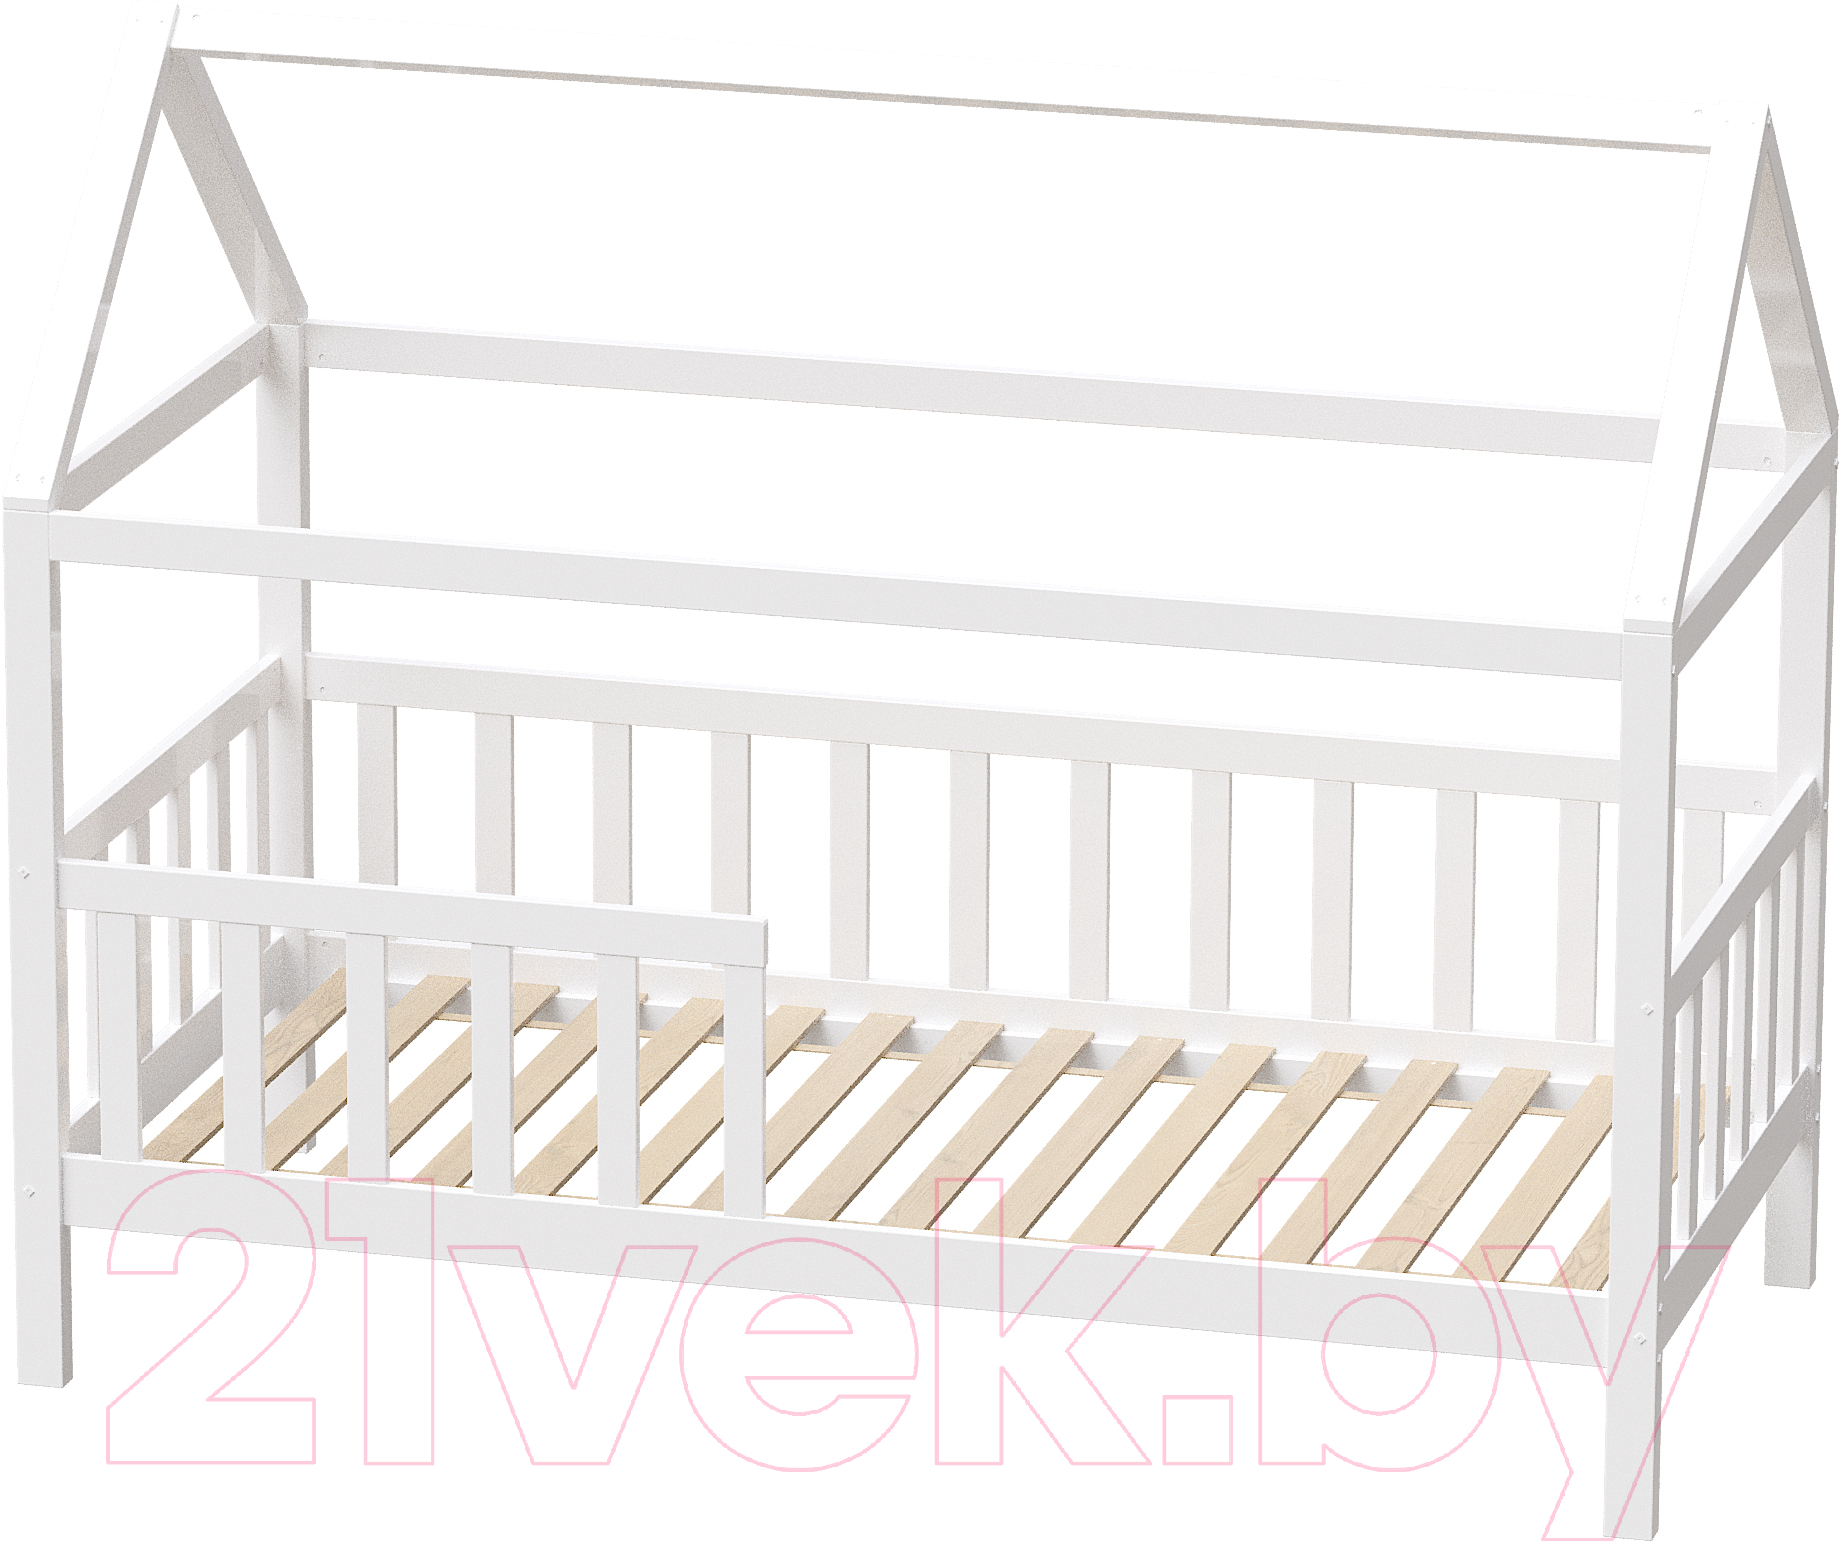 Стилизованная кровать детская Millwood SweetDreams 2